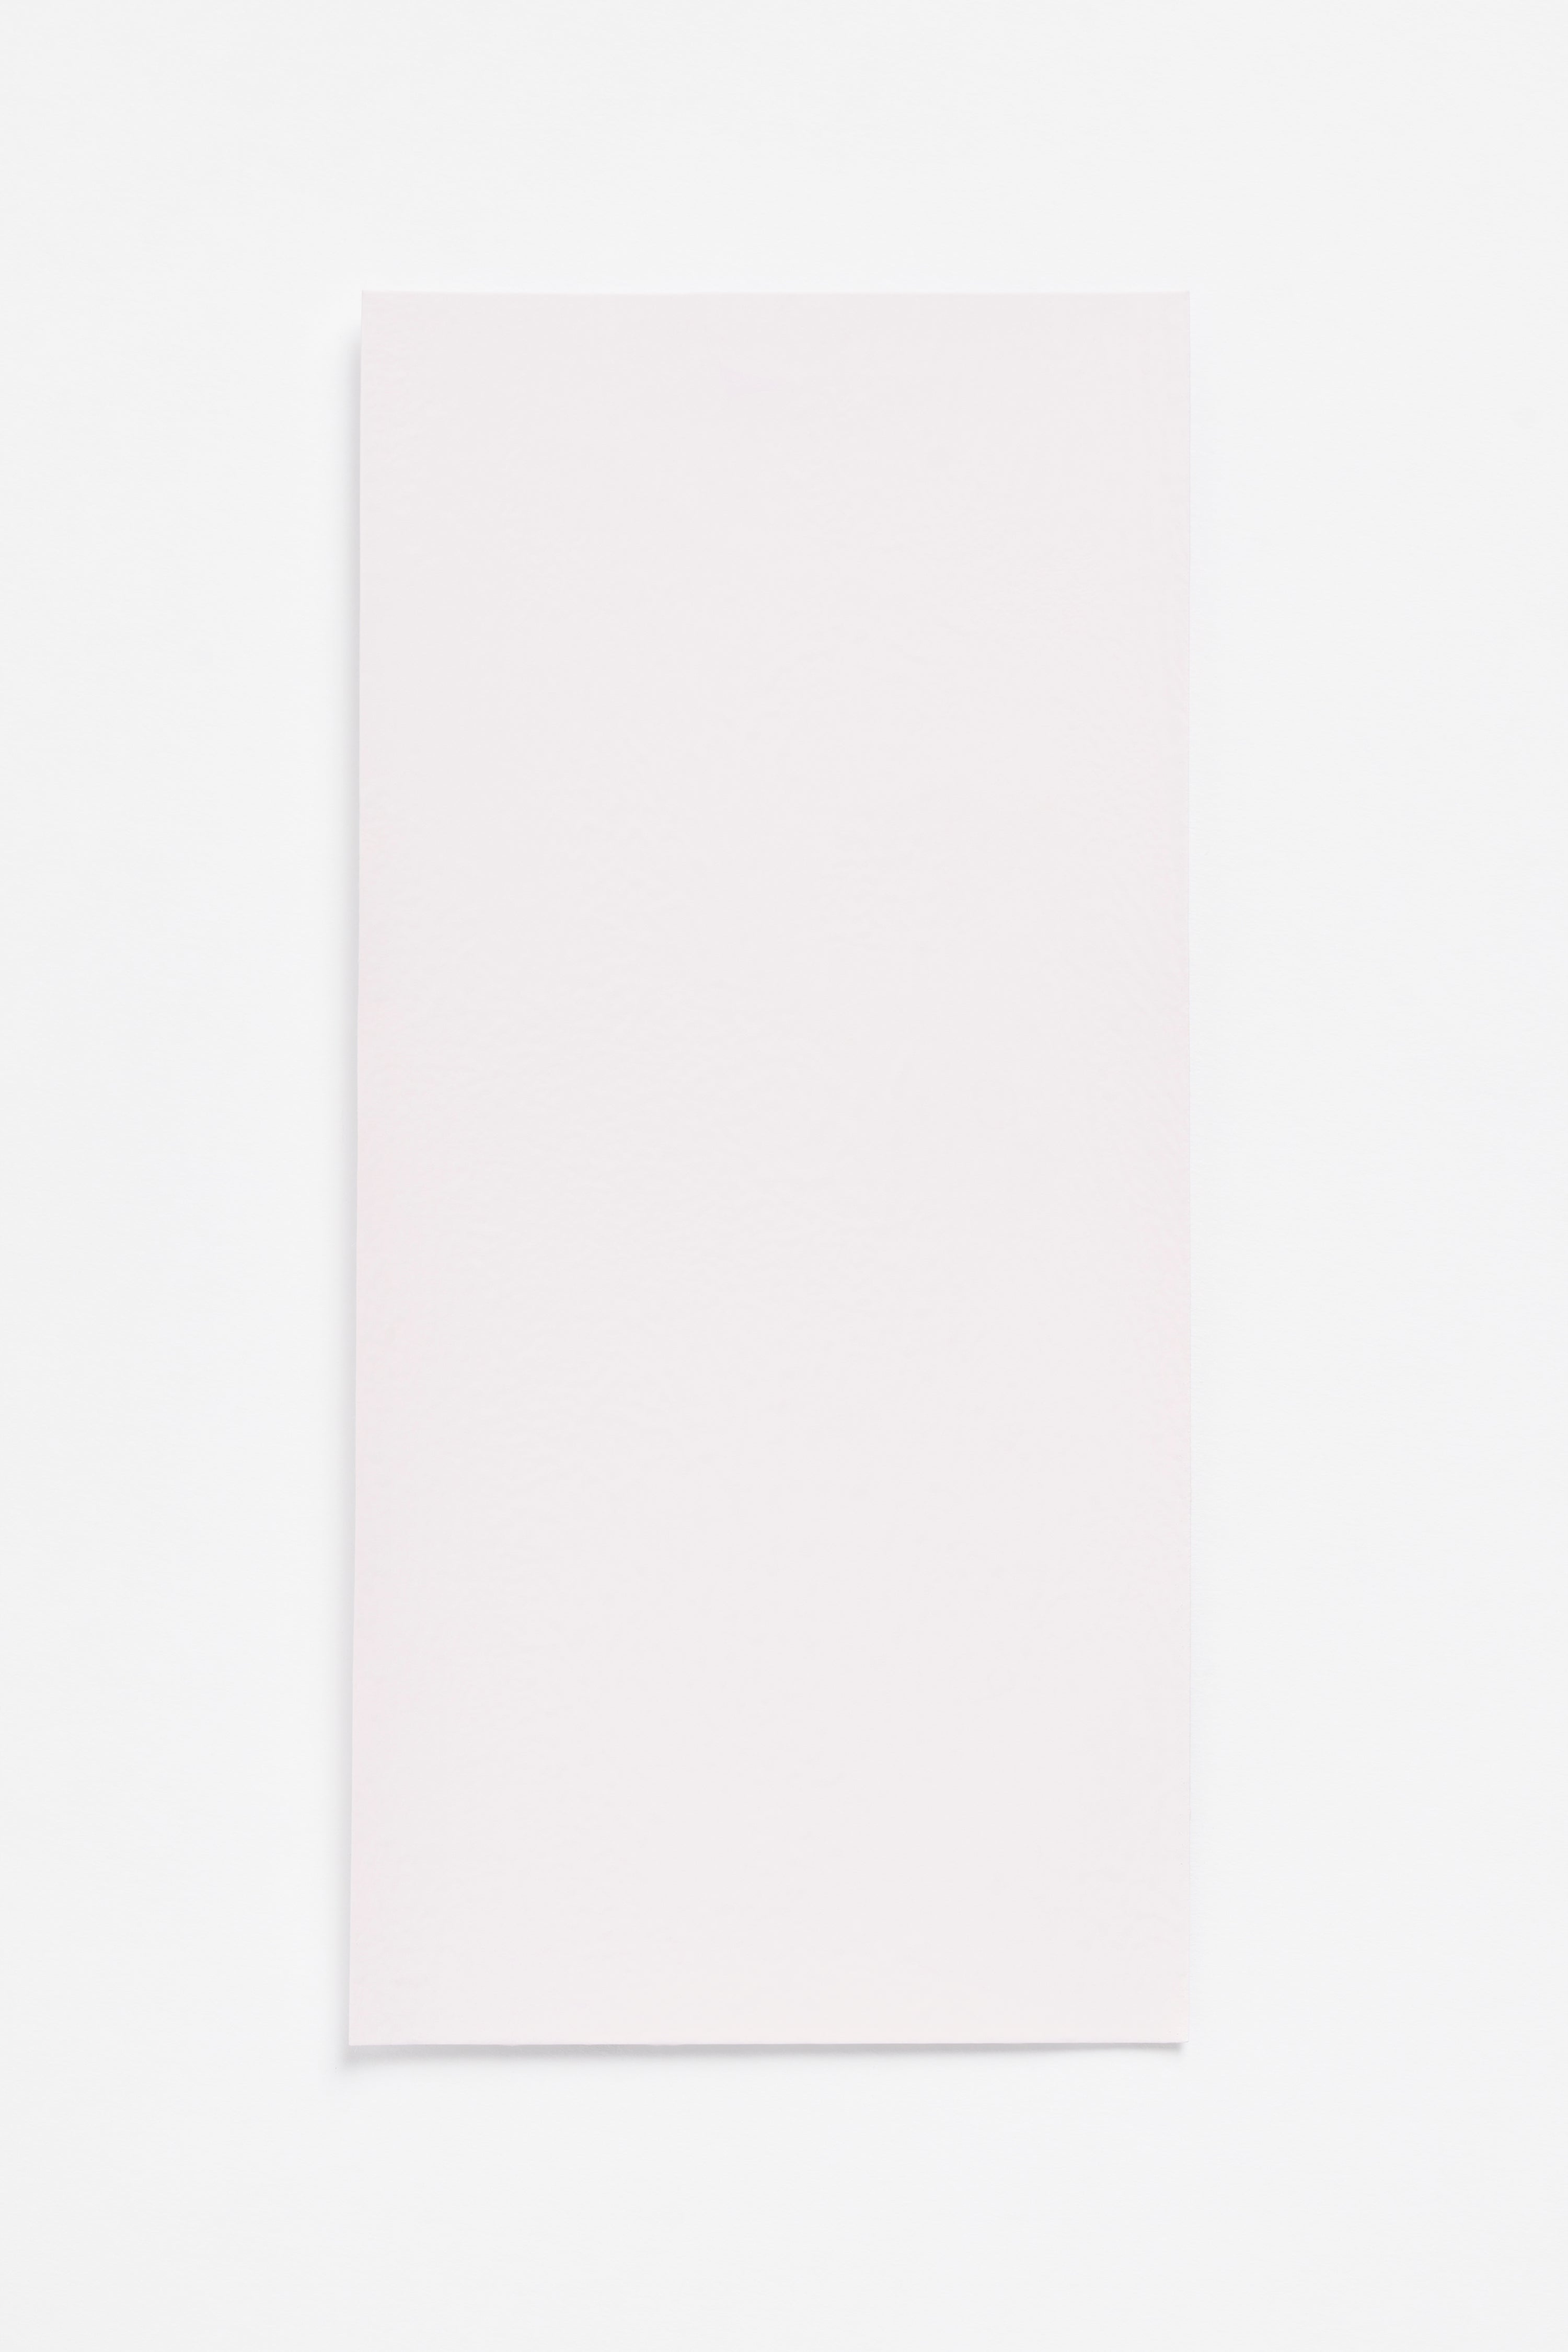 Bubblegum Light — a paint colour developed by Sabine Marcelis for Blēo